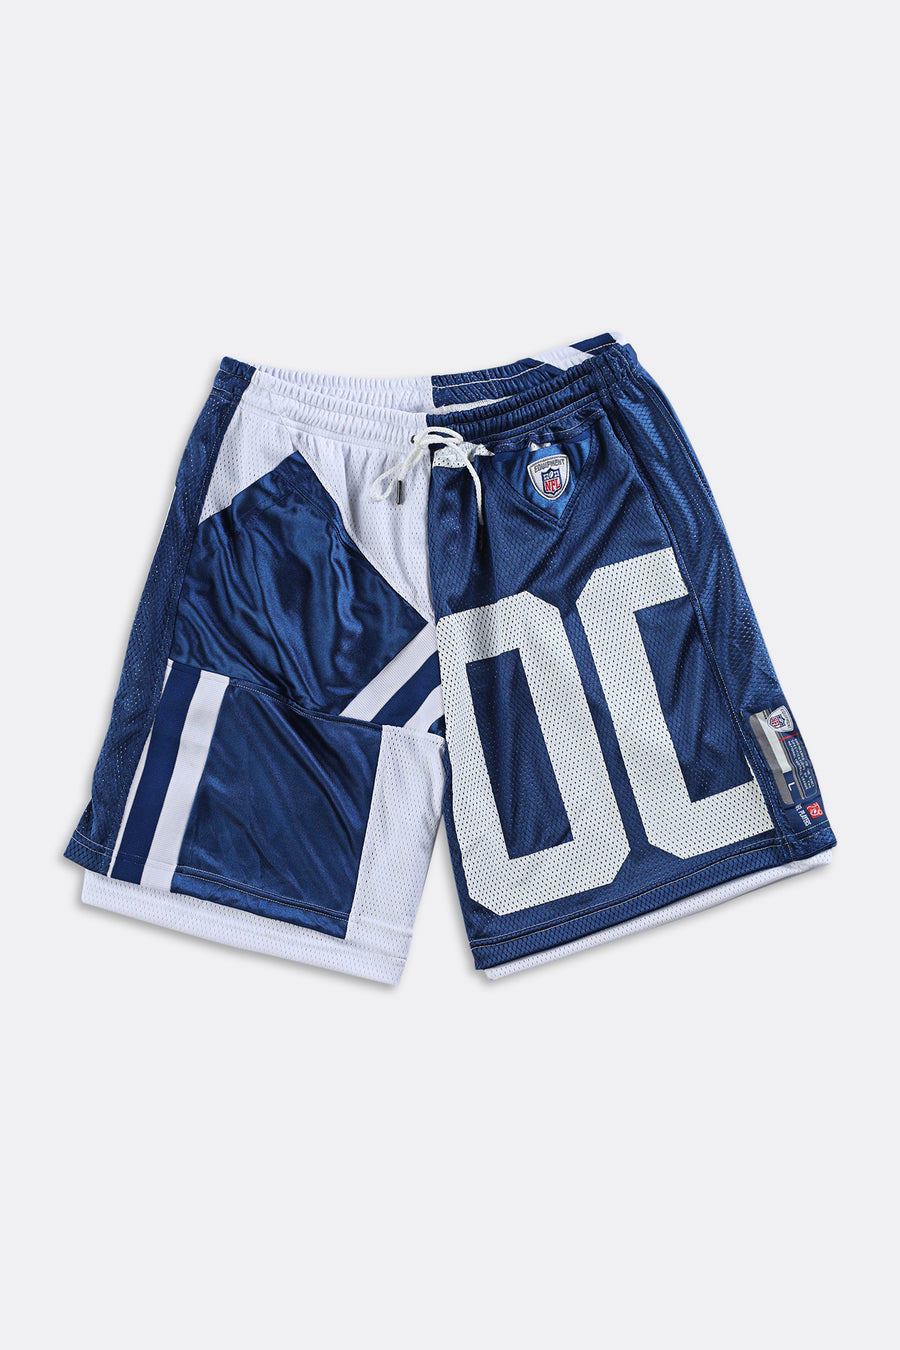 Rework Unisex Colts NFL Jersey Shorts - Women-L, Men-M